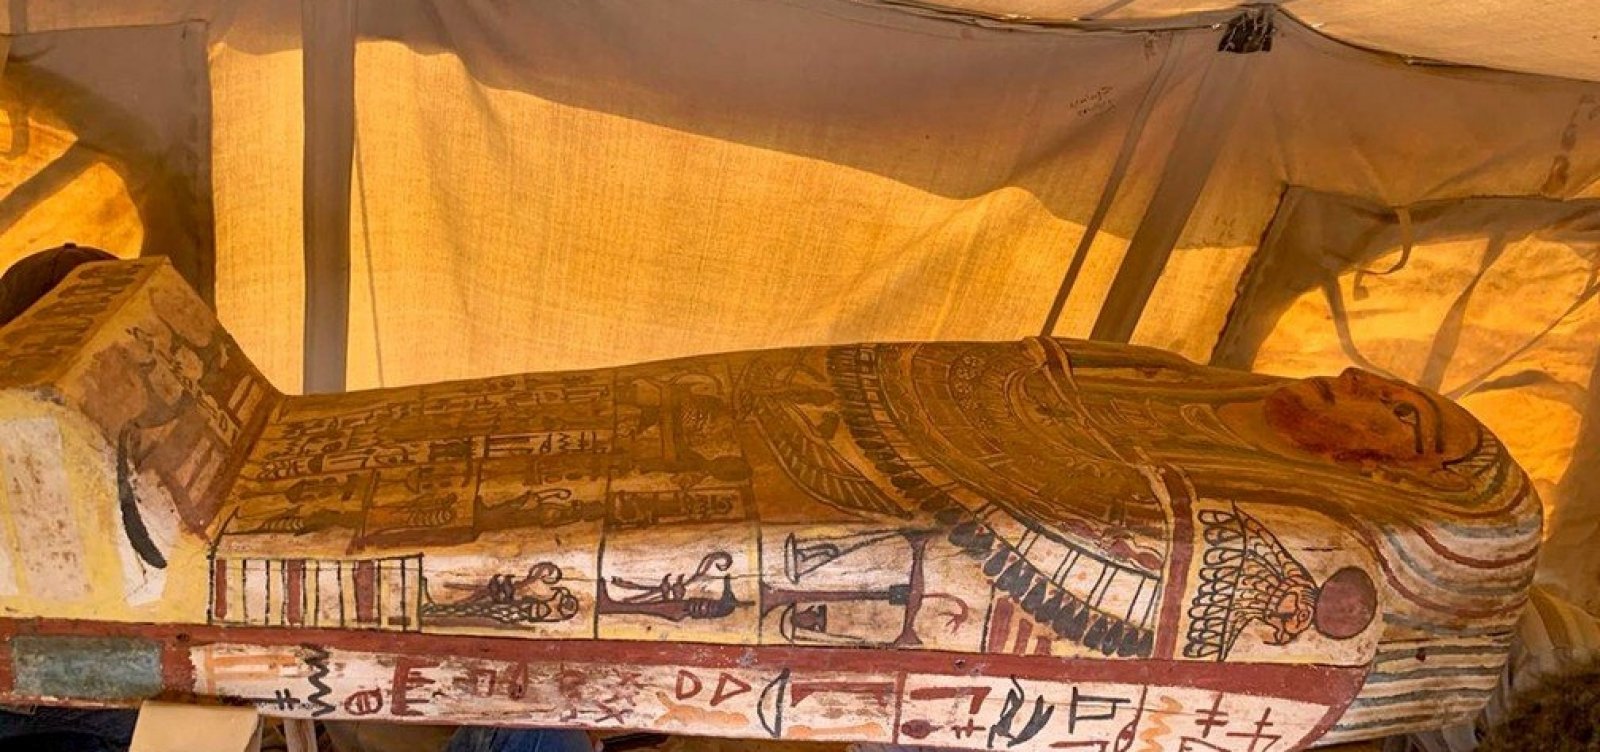 [Egito anuncia a descoberta de 14 sarcófagos com cerca de 2,5 mil anos]